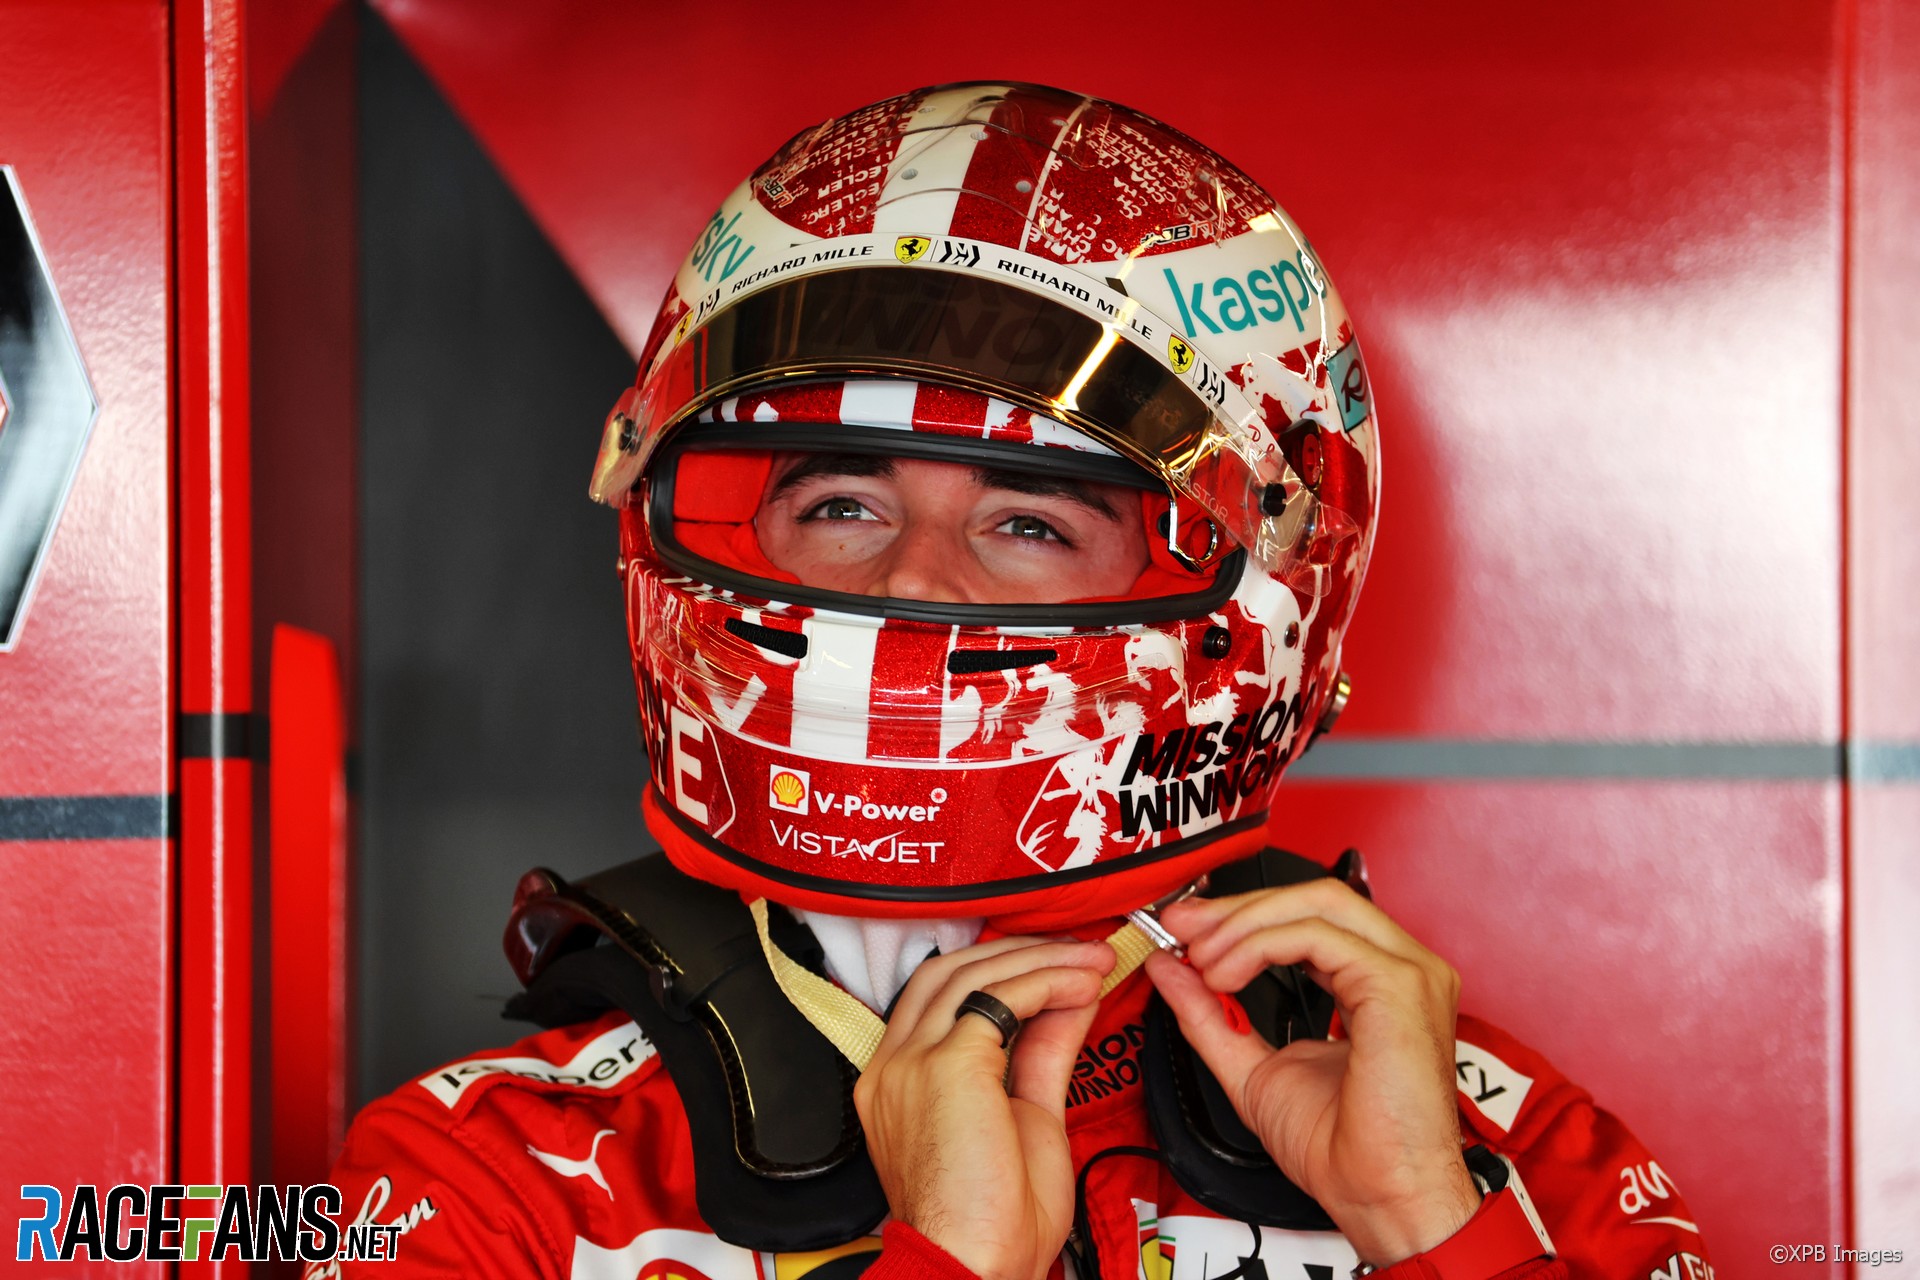 Charles Leclerc, Ferrari, Yas Marina, 2021